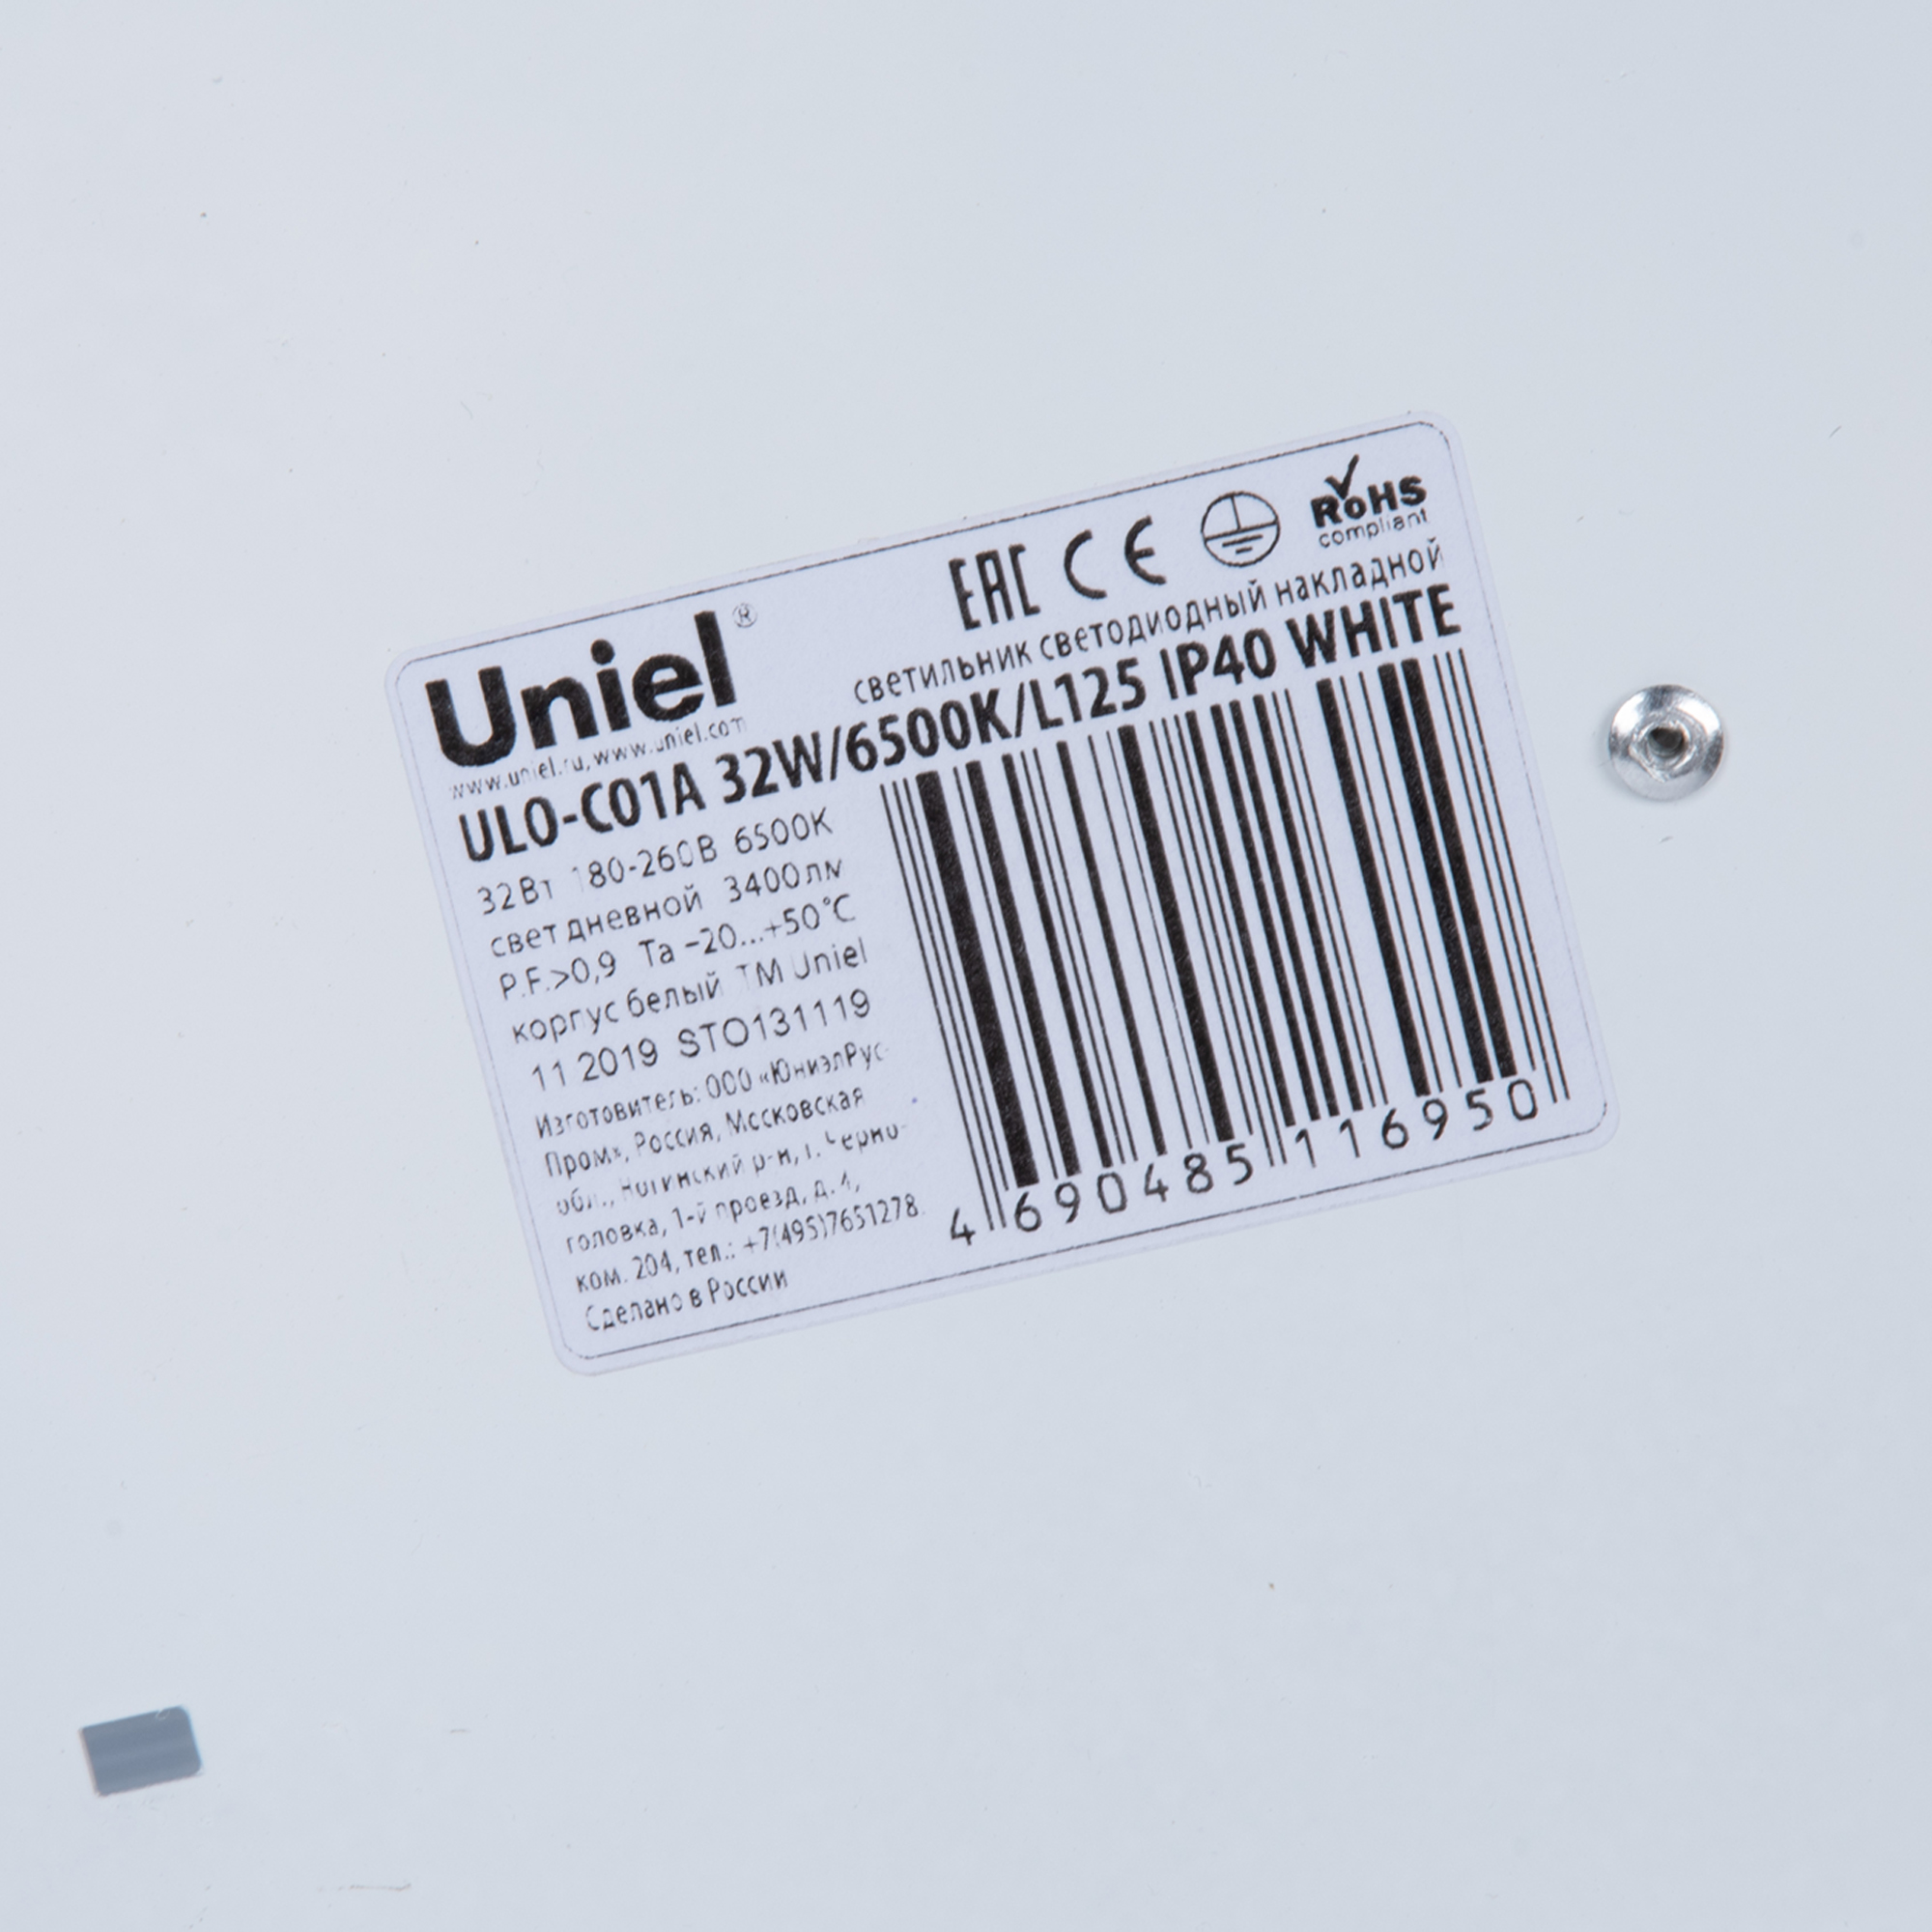 ULO-C01A 32W-6500K-L125 IP40 WHITE Светильник линейный светодиодный накладной. Белый свет 6500К. 3400Лм. Корпус белый. TM Uniel.